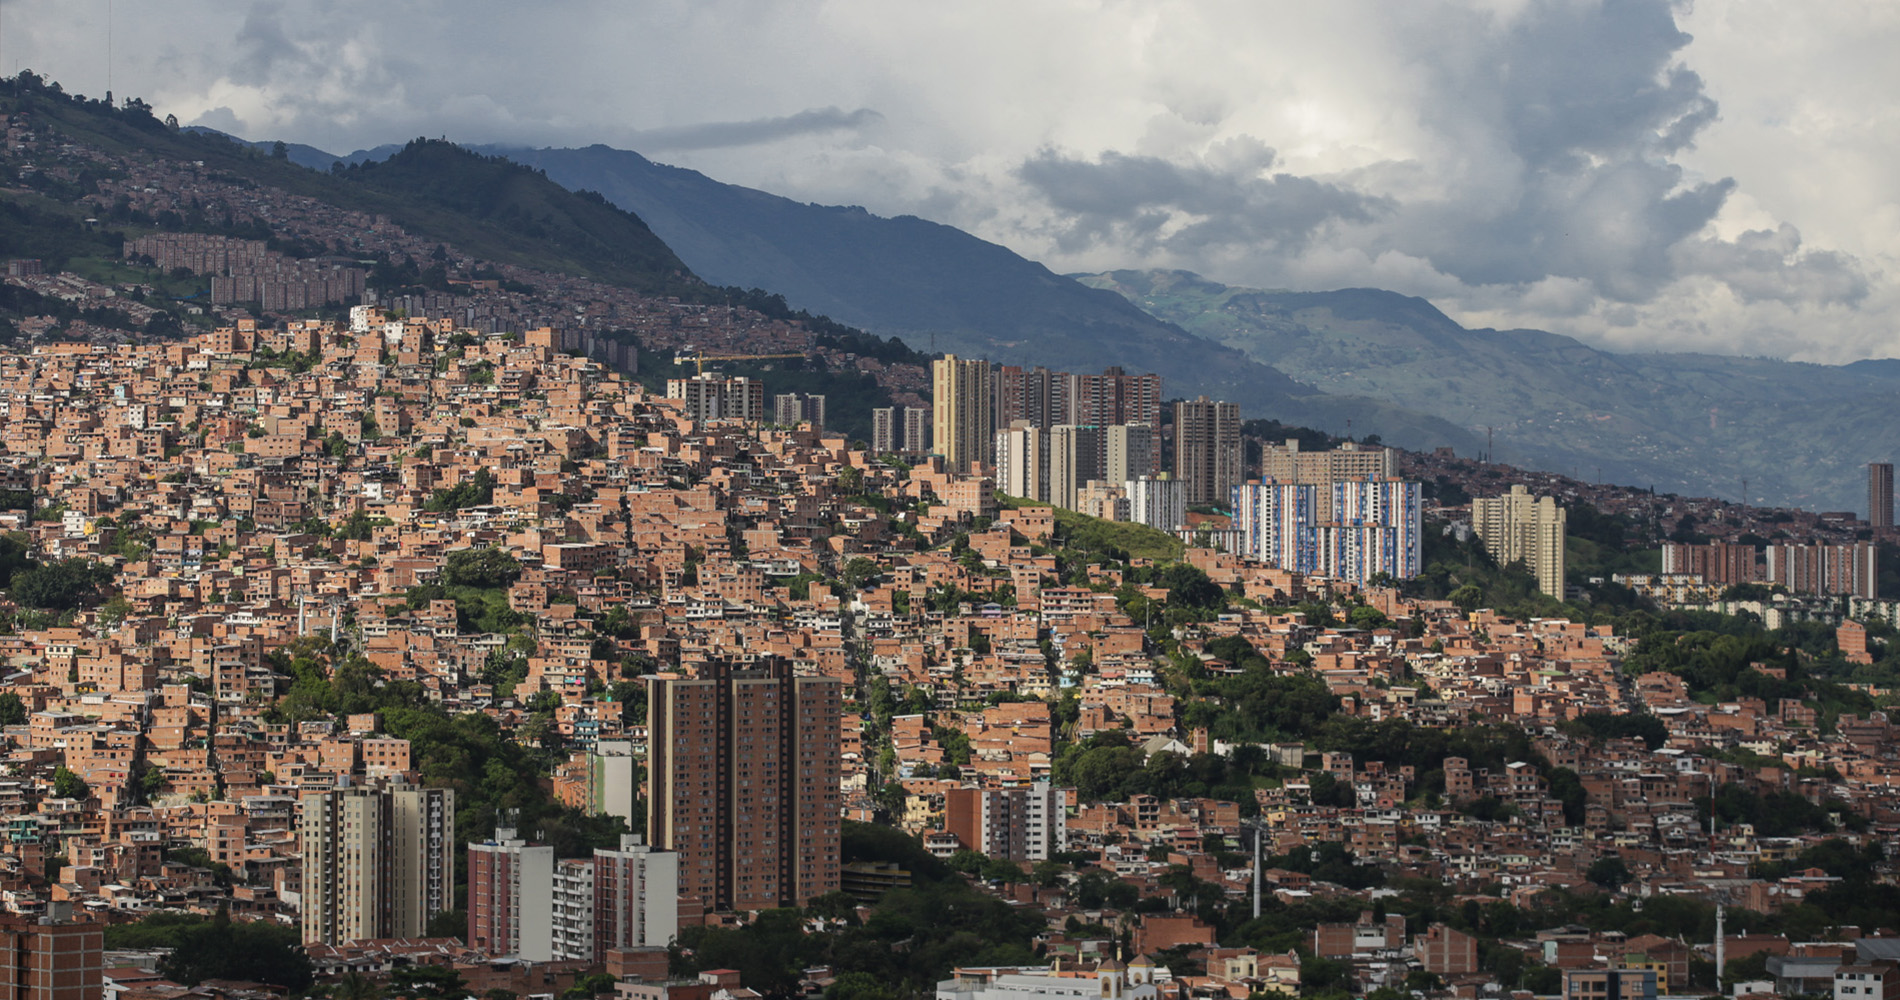 La ville de Medellin colonise les flancs de collines